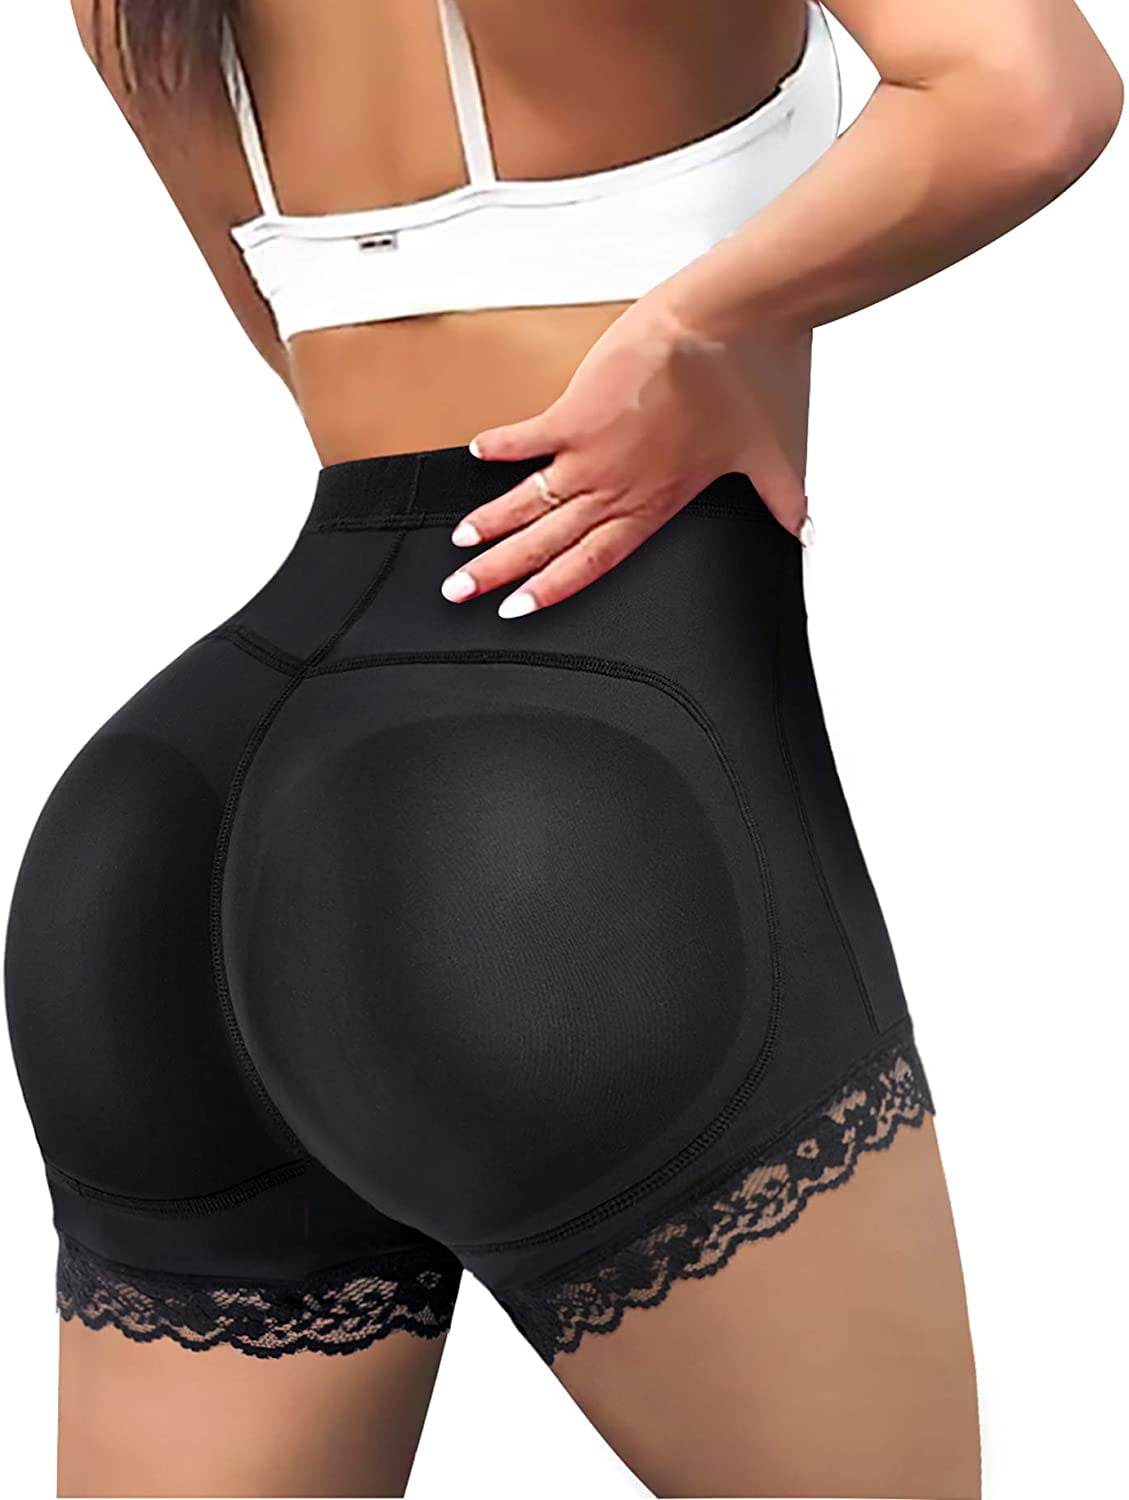 Butt Lifter Boy Shorts for Women Butt Padded Underwear for Dresses Hip Enhancer Panties 